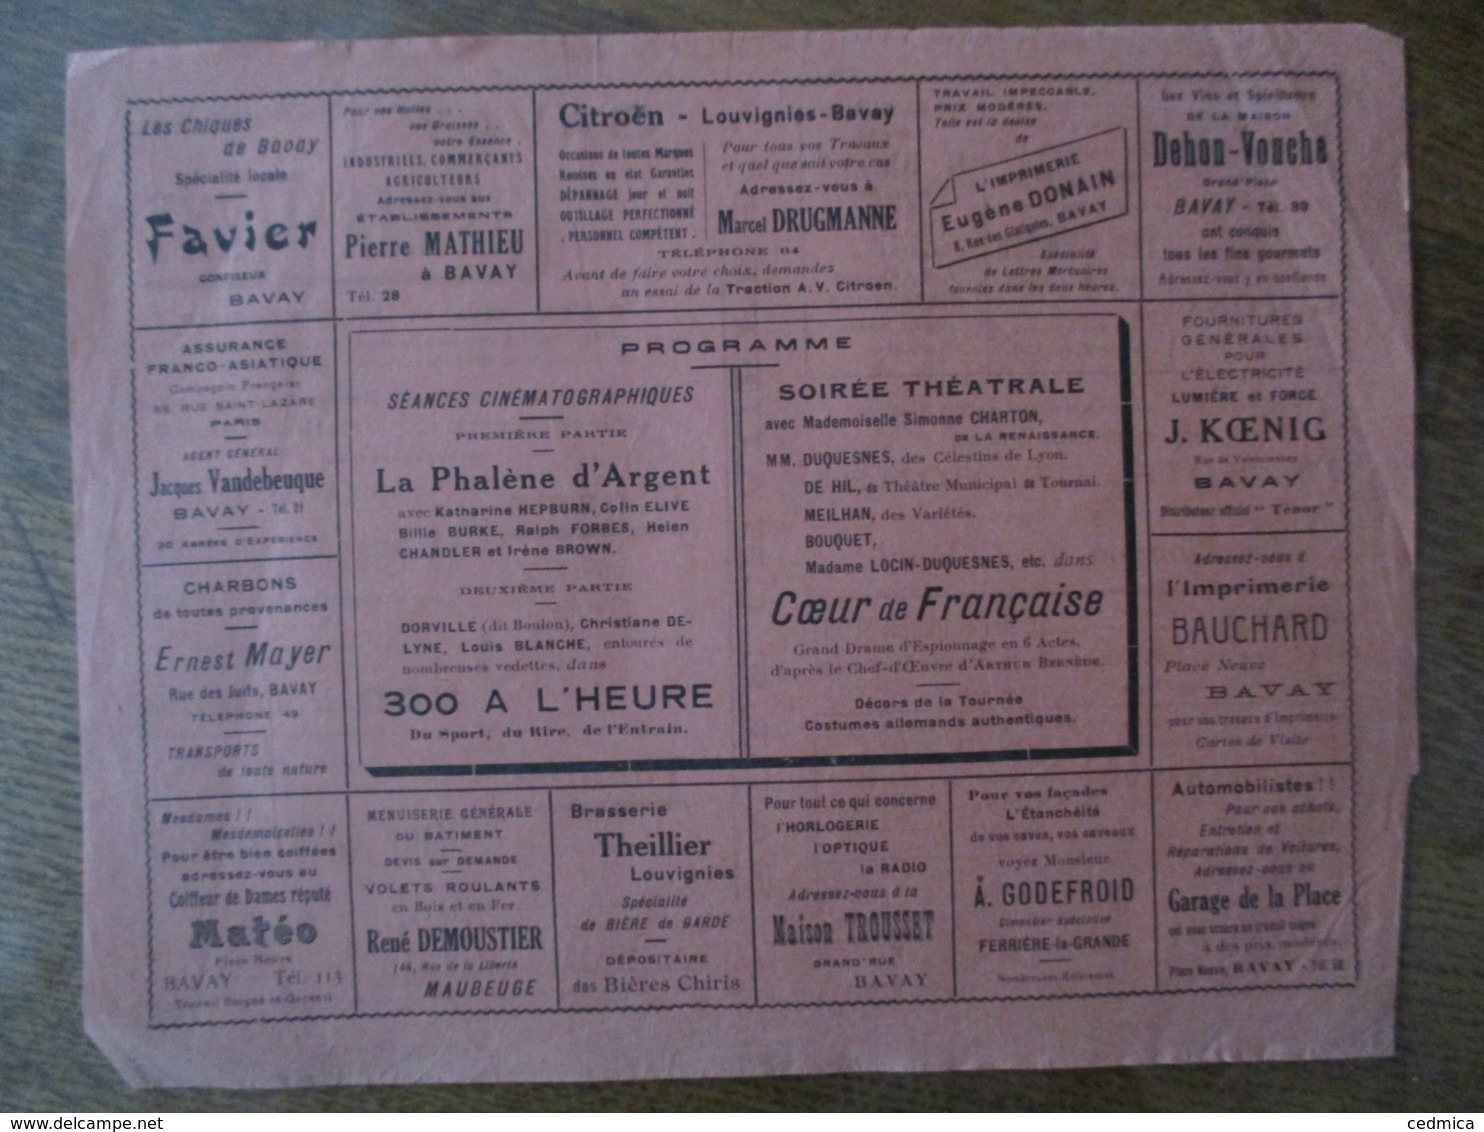 BAVAY CINEMA REXY 10 ET 11 NOVEMBRE 1937 LA PHALENE D'ARGENT ET THEÂTRE COEUR DE FRANCAISE DRAME D'ESPIONNAGE - Programmi